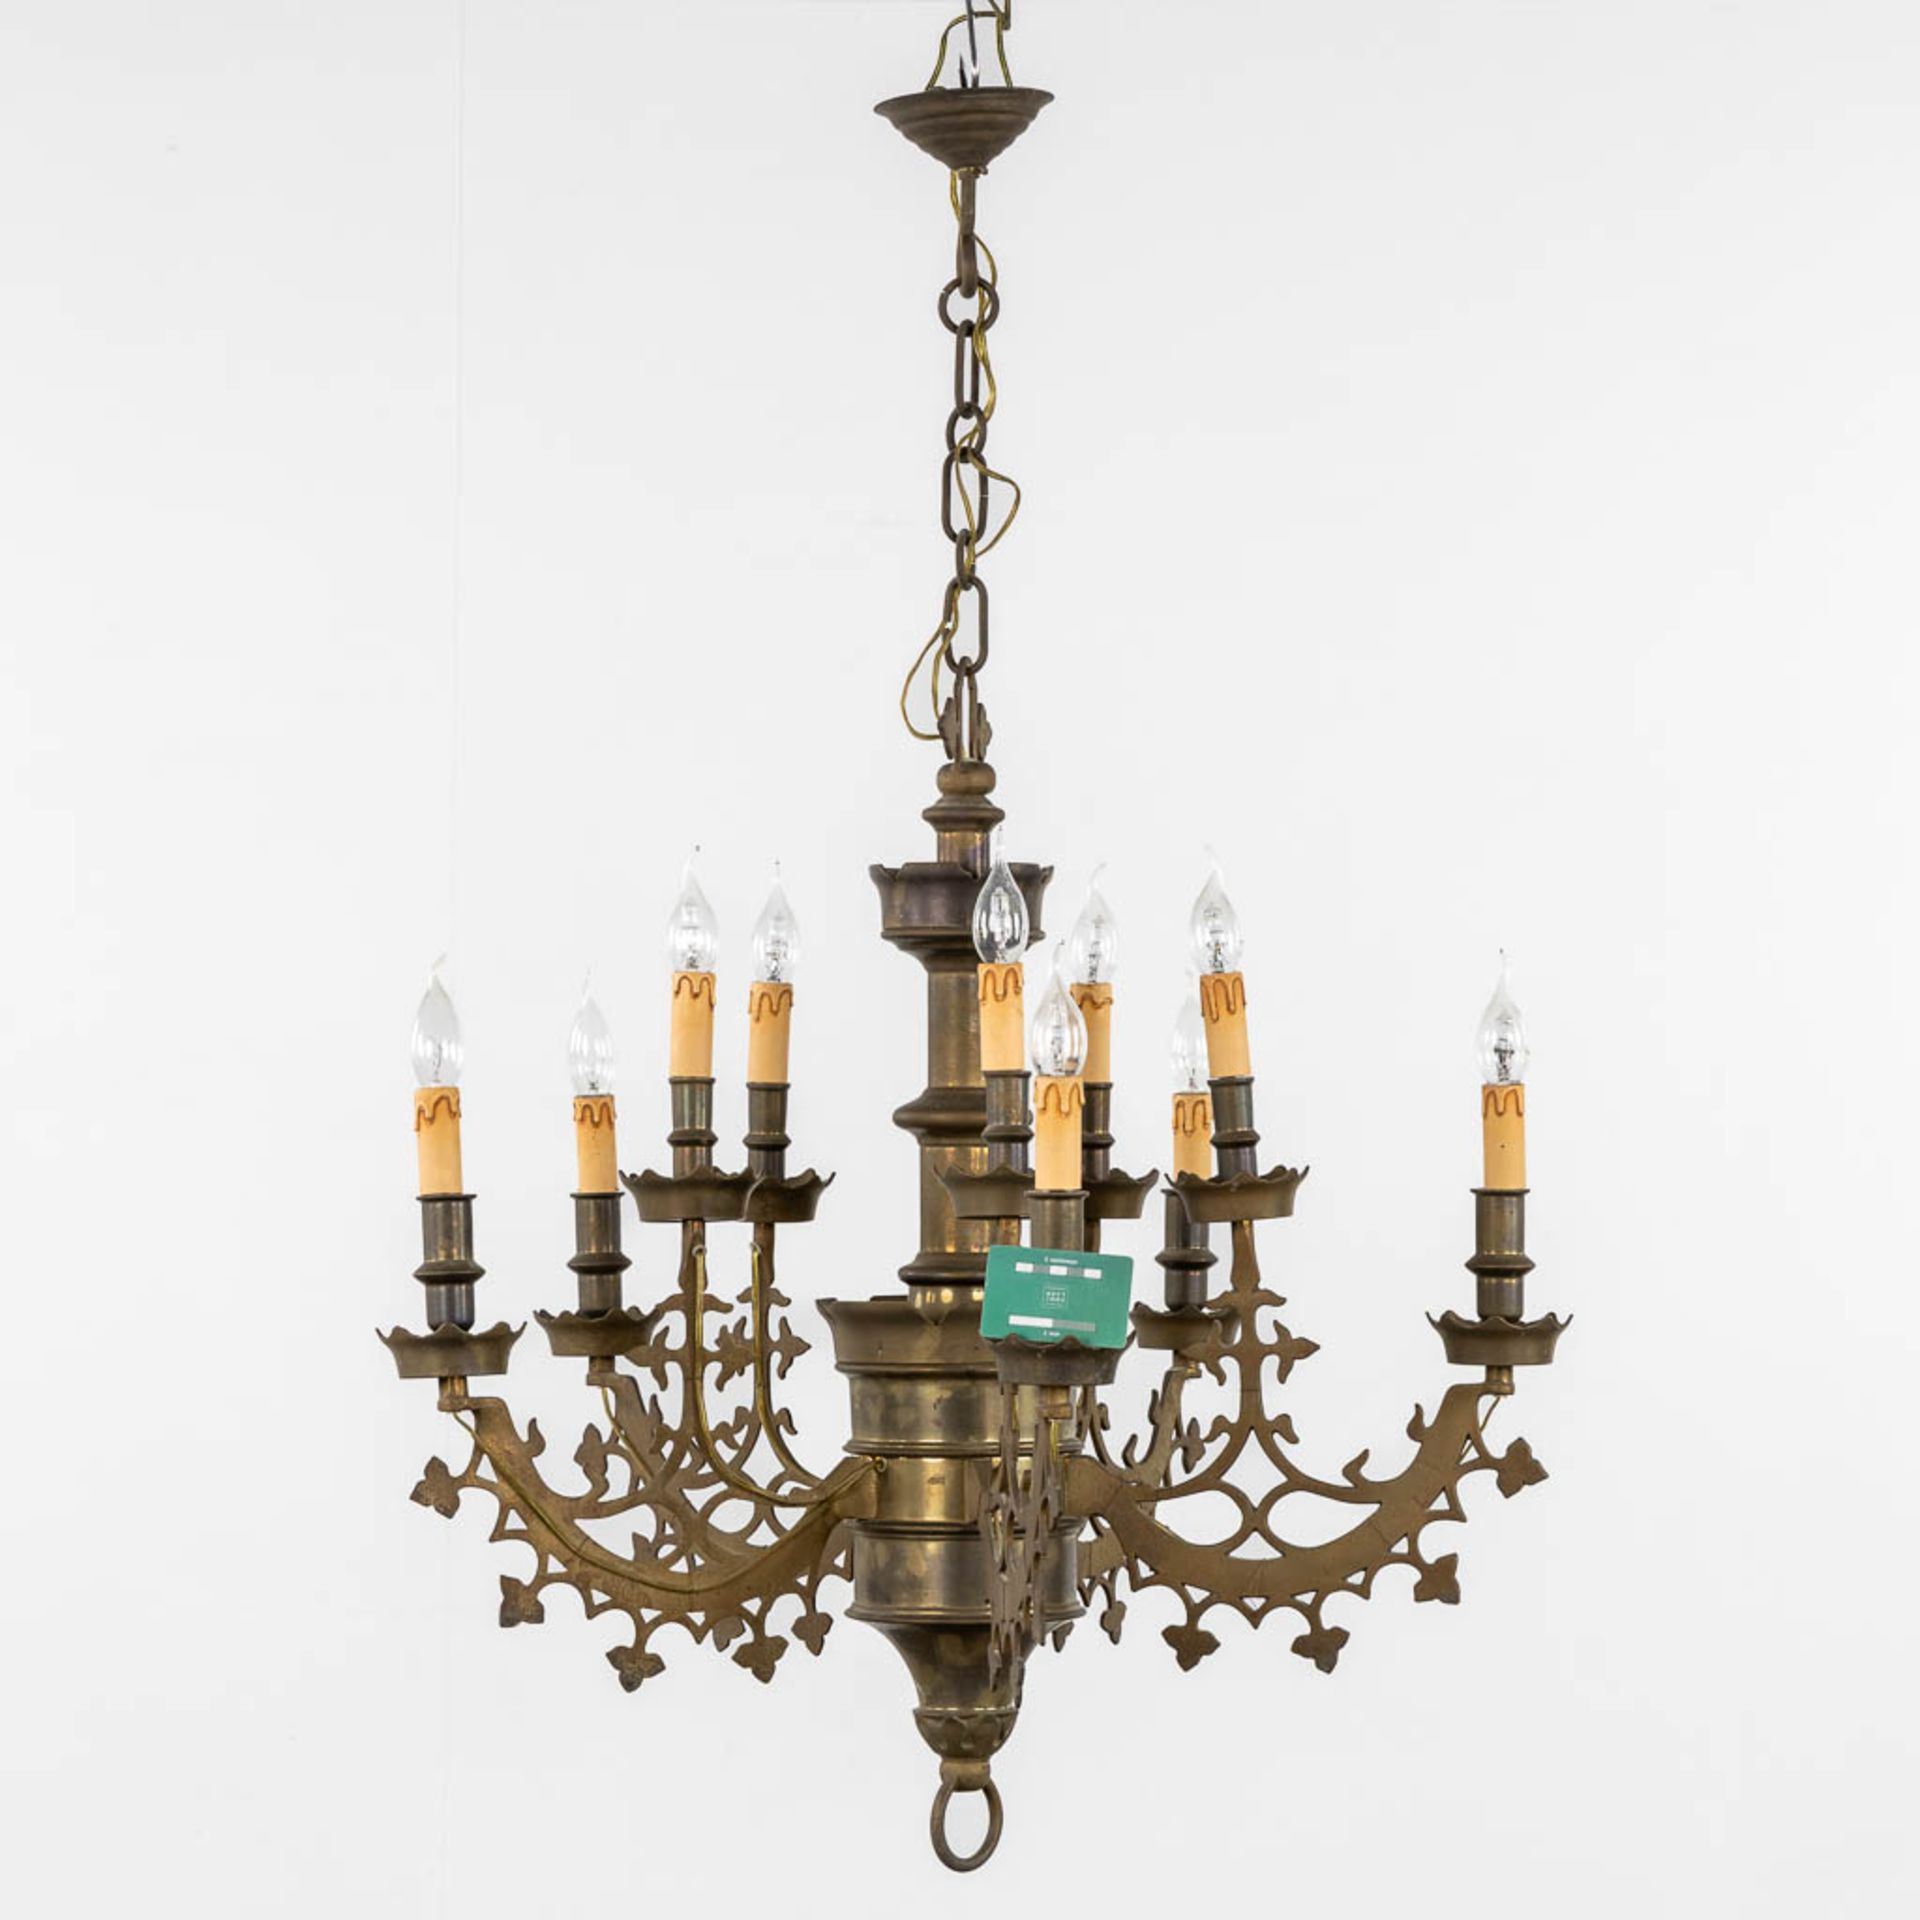 A large chandelier, bronze, Gothic Revival. (H:78 x D:71 cm) - Bild 2 aus 9